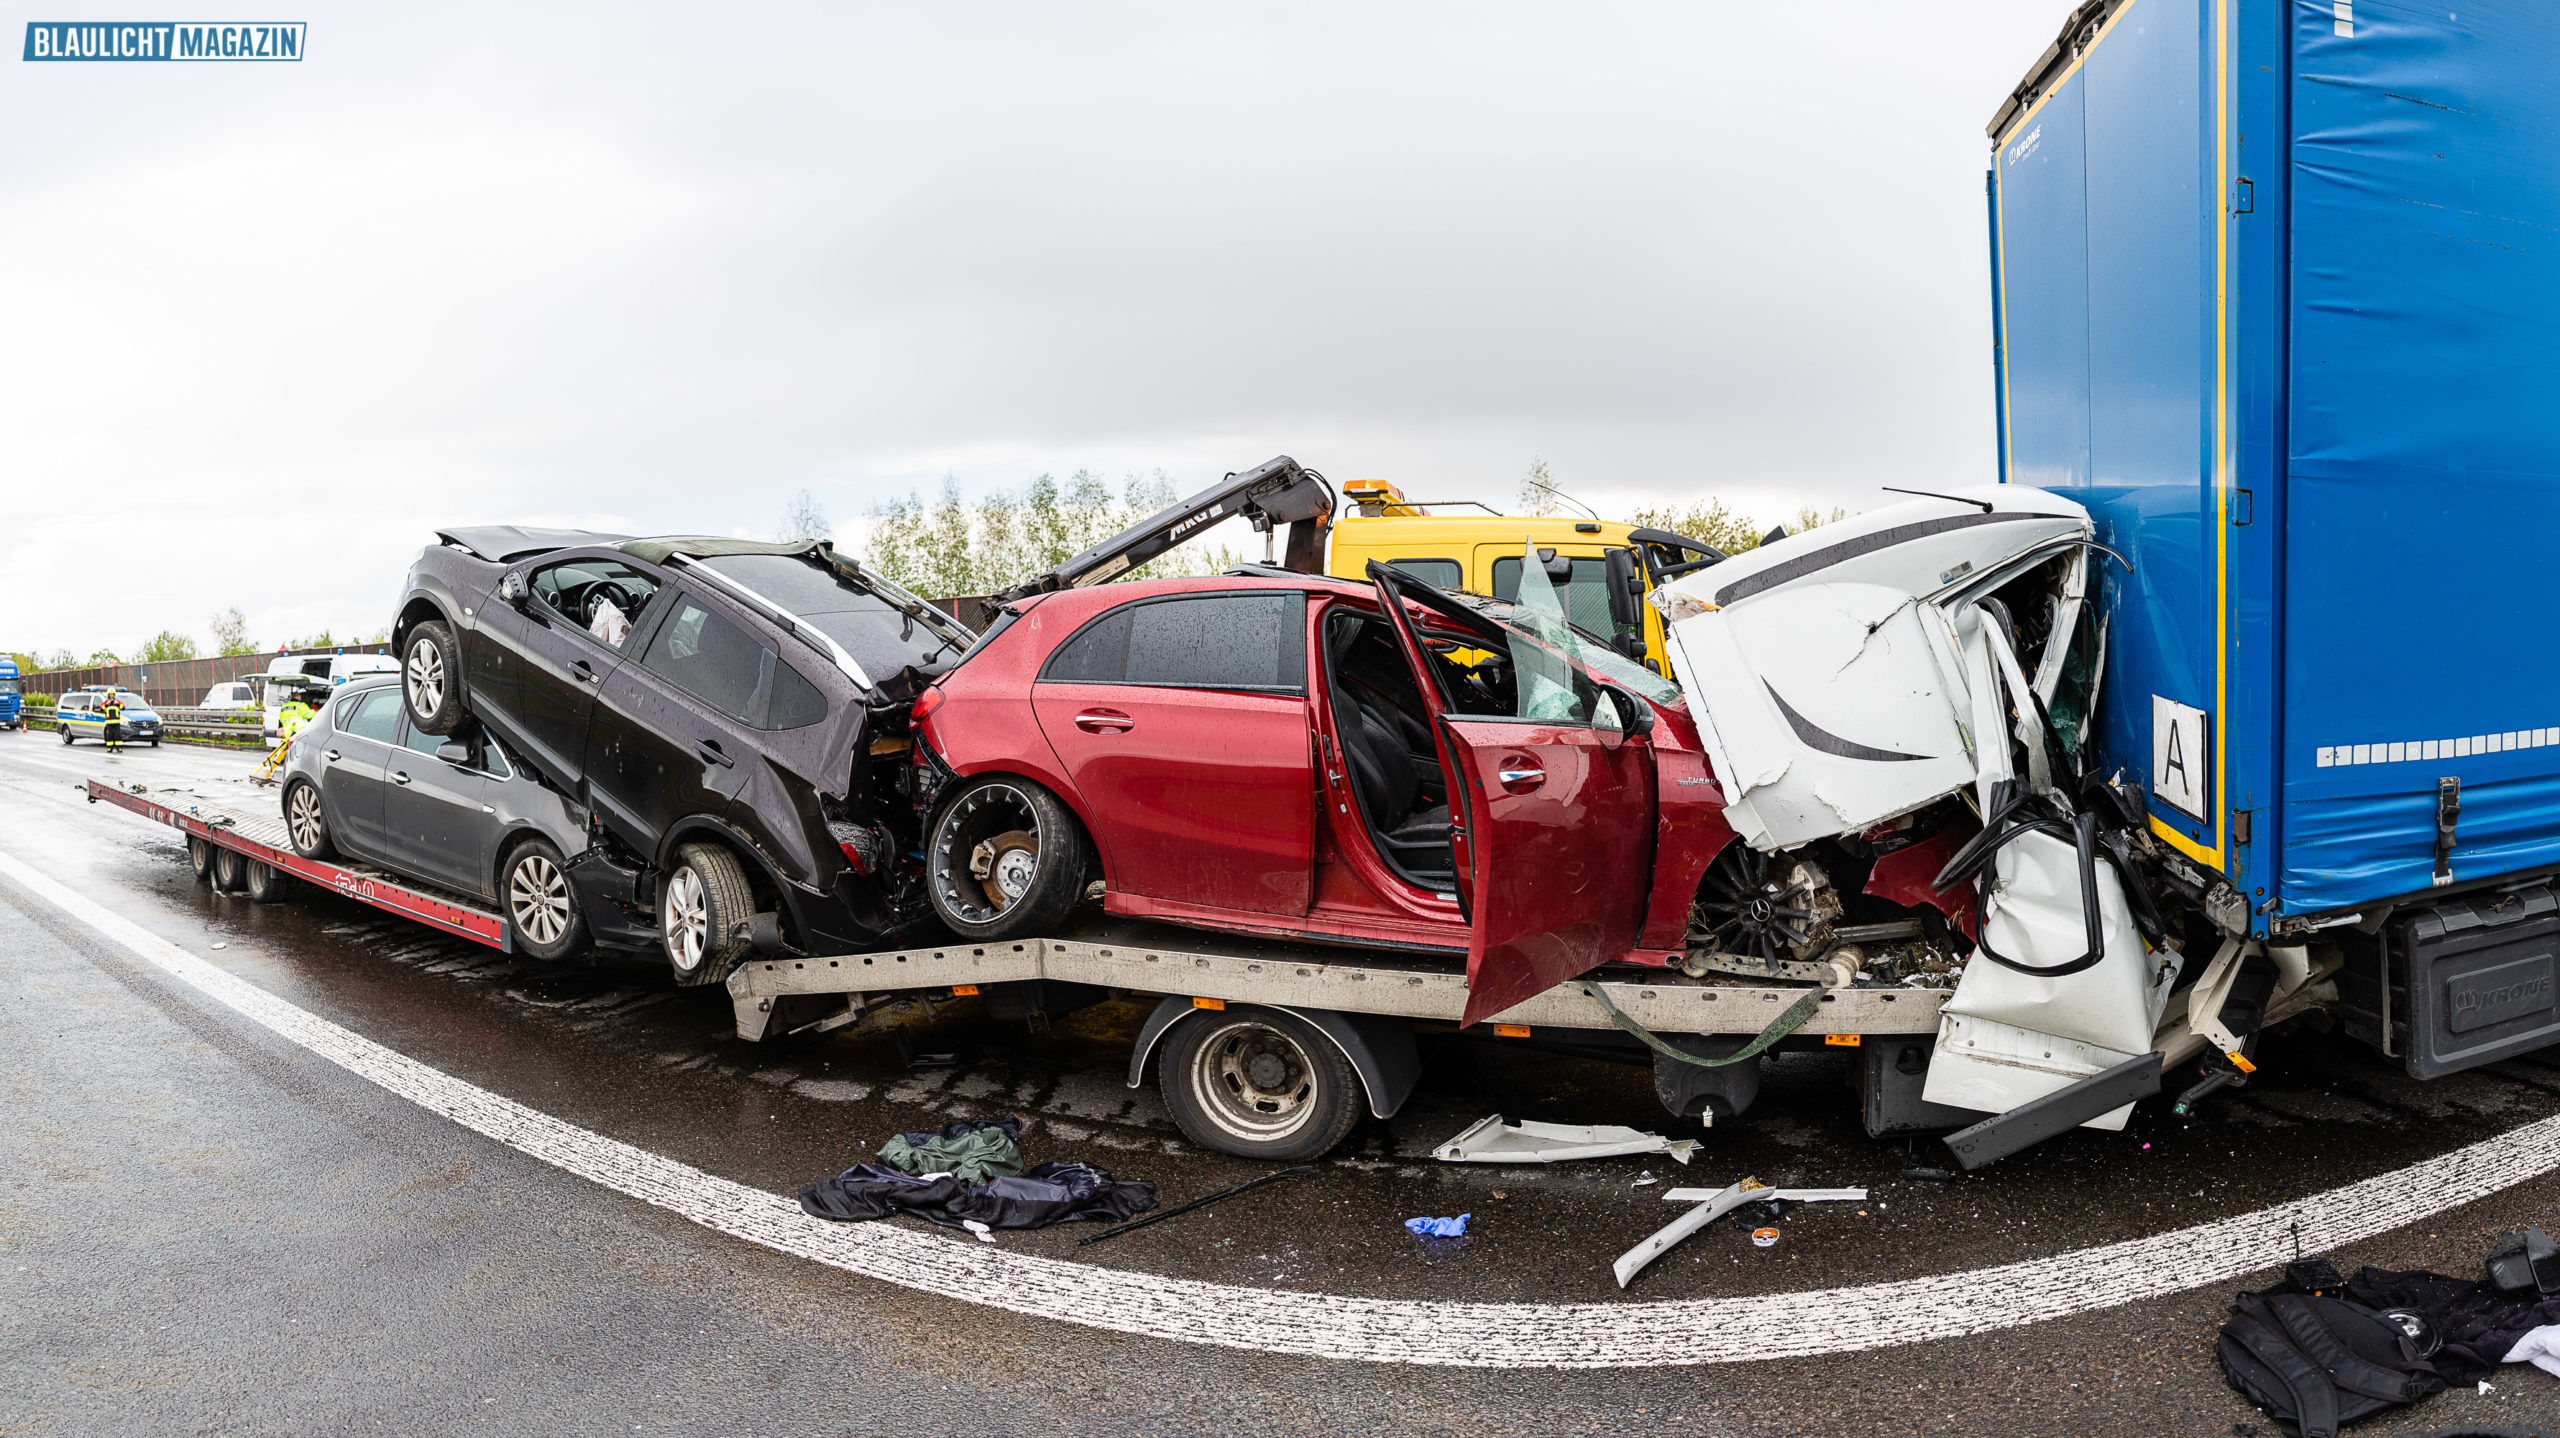 Autotransporter kracht in Stauende – Fahrer stirbt – Blaulicht